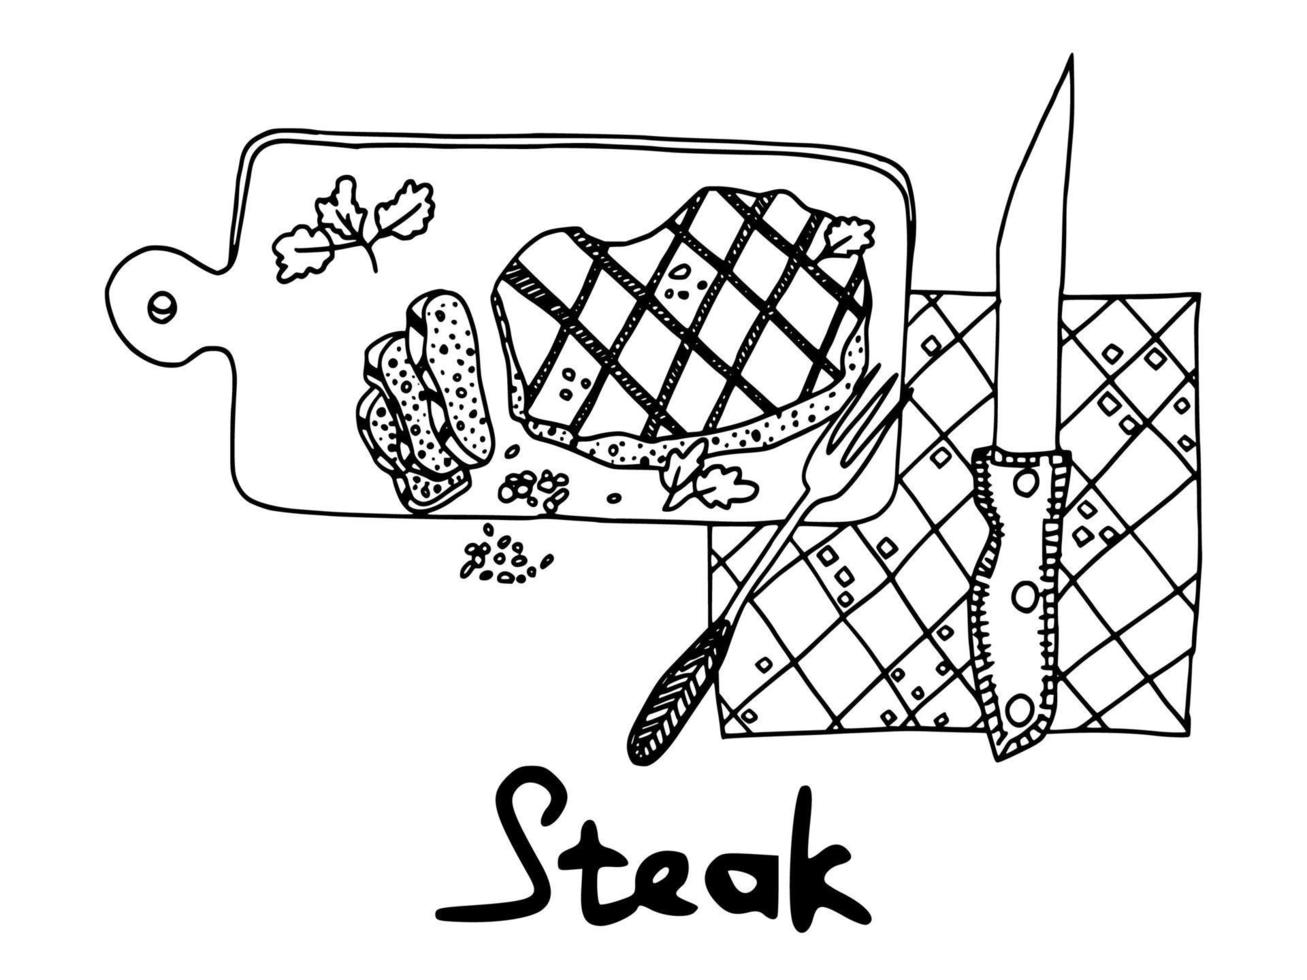 meat steak on wooden board doodle. illustration vector